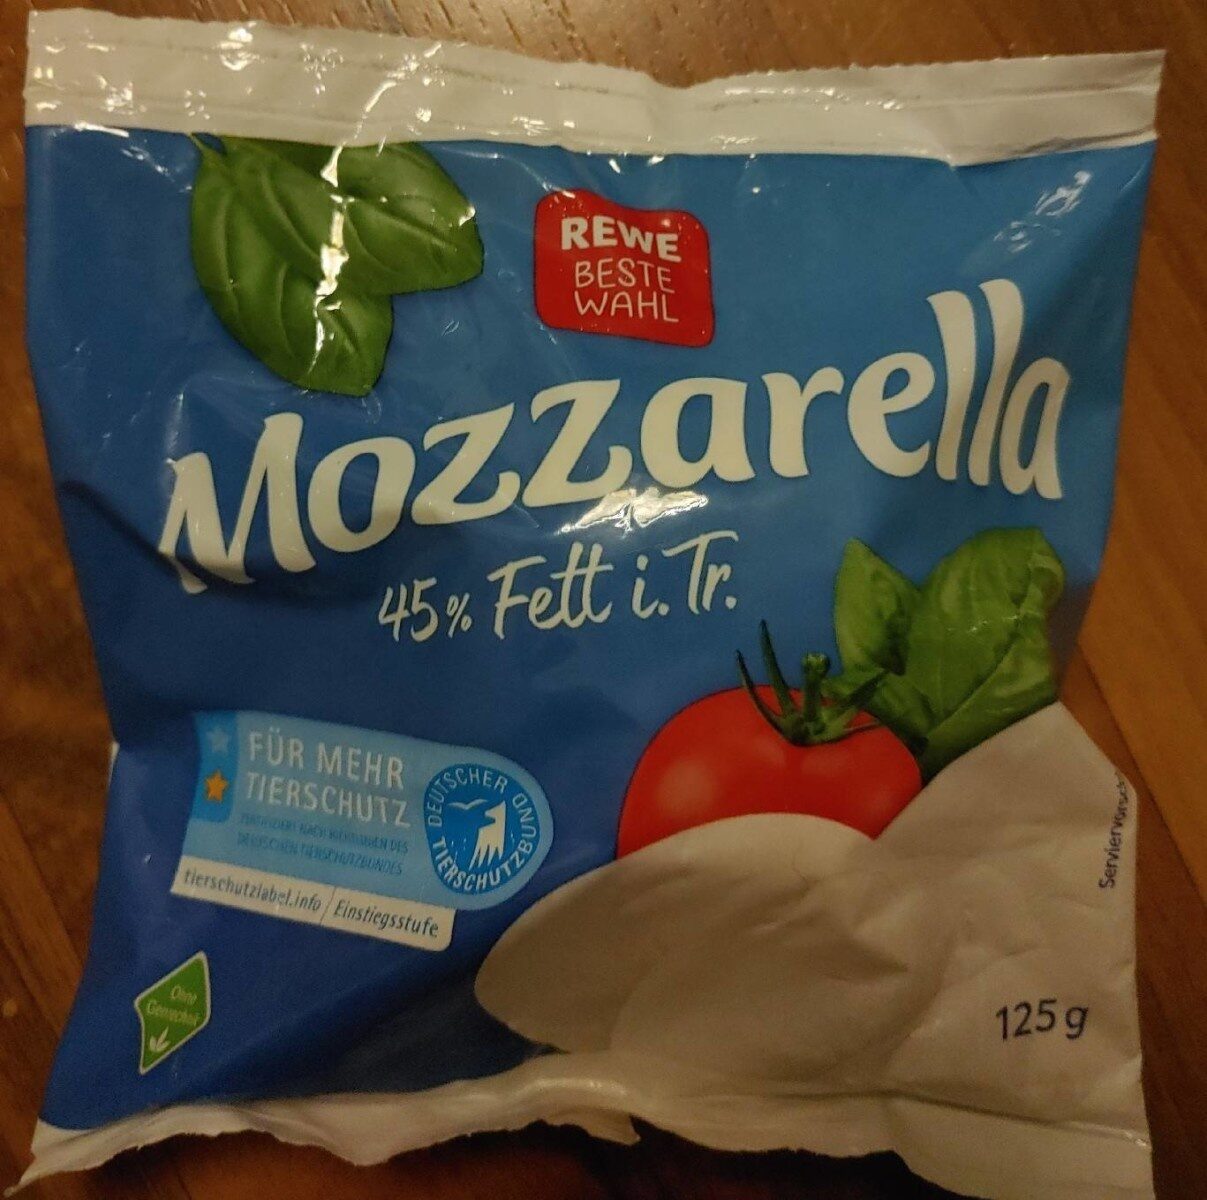 Mozzarella 45% Fett - Product - en